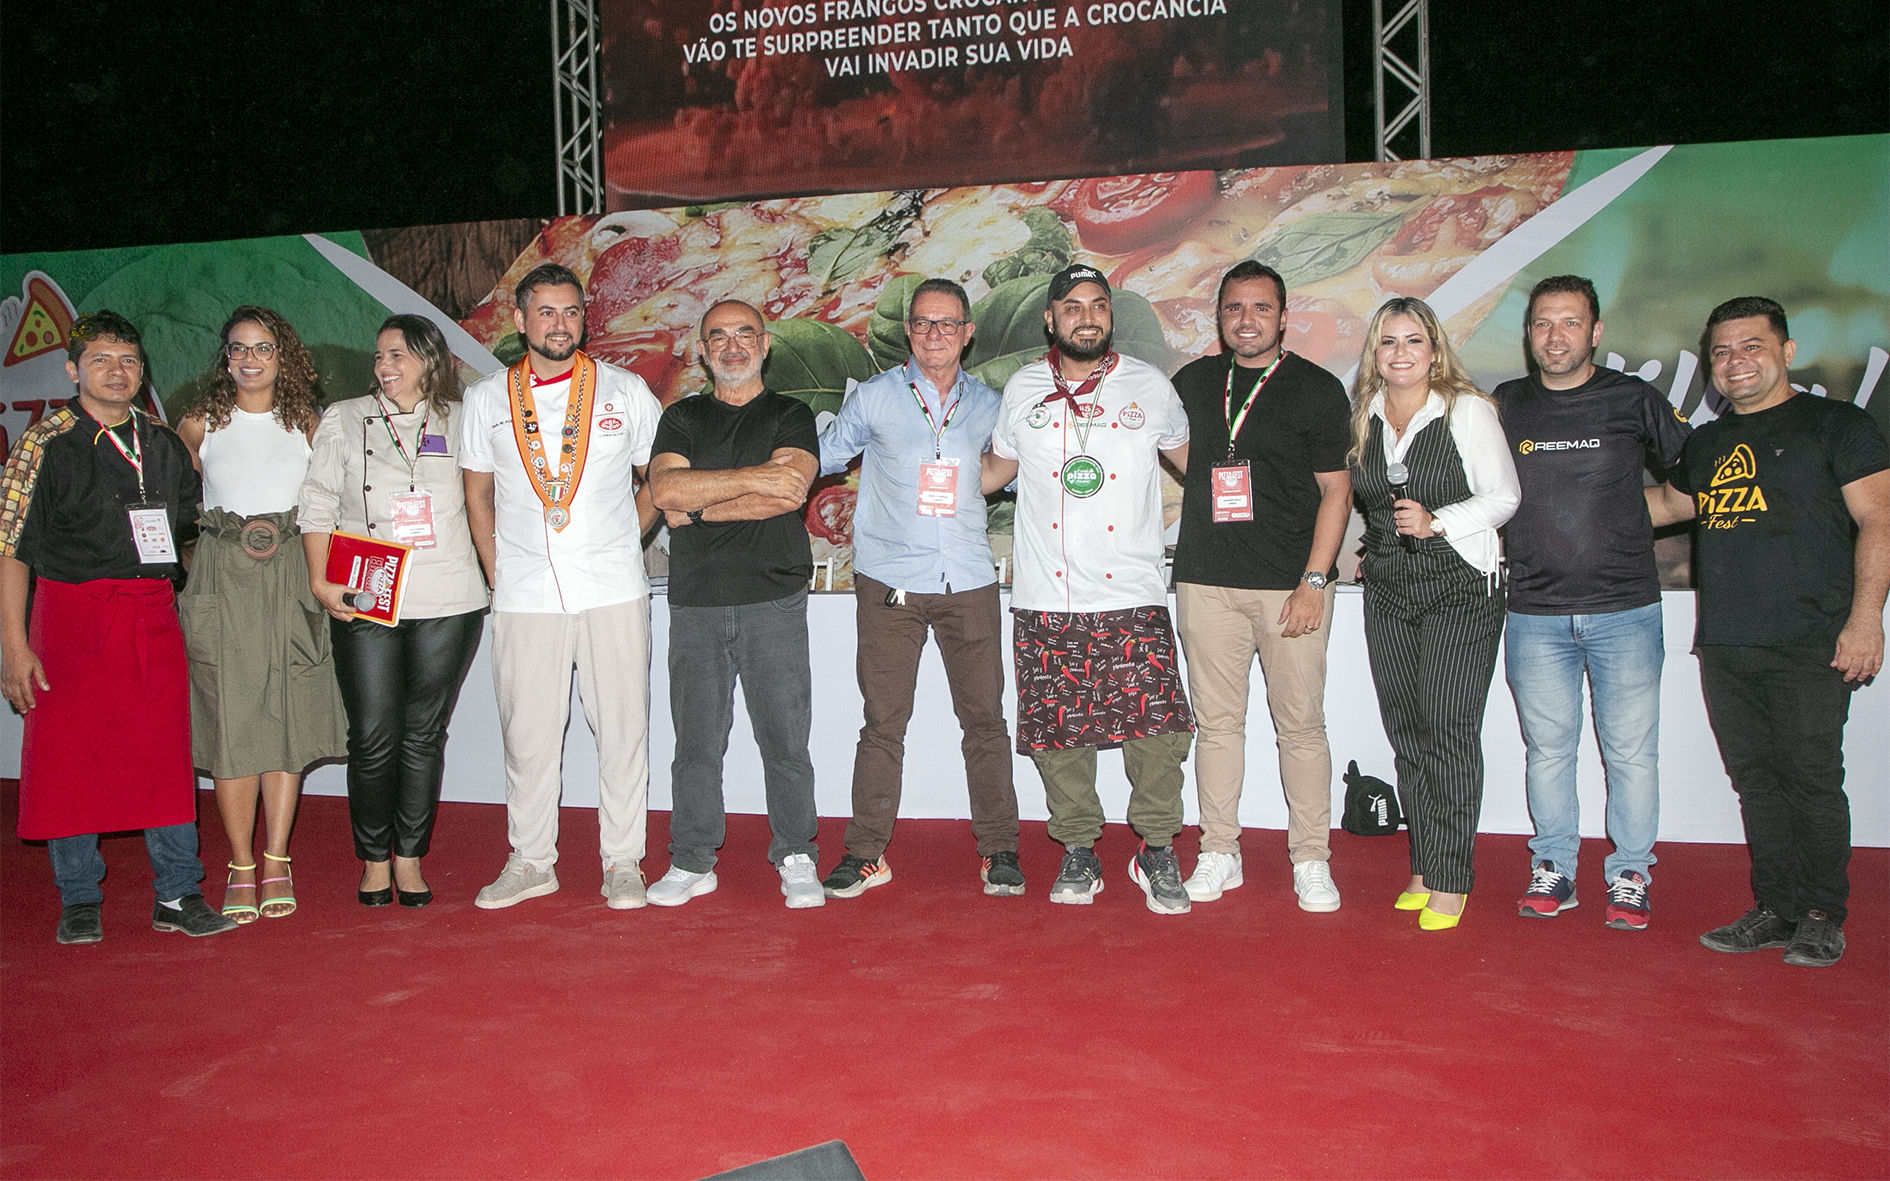 Terceira edição do Pizza Fest Internacional encerra com italiano vencedor e dois eusebienses em terceiro lugar